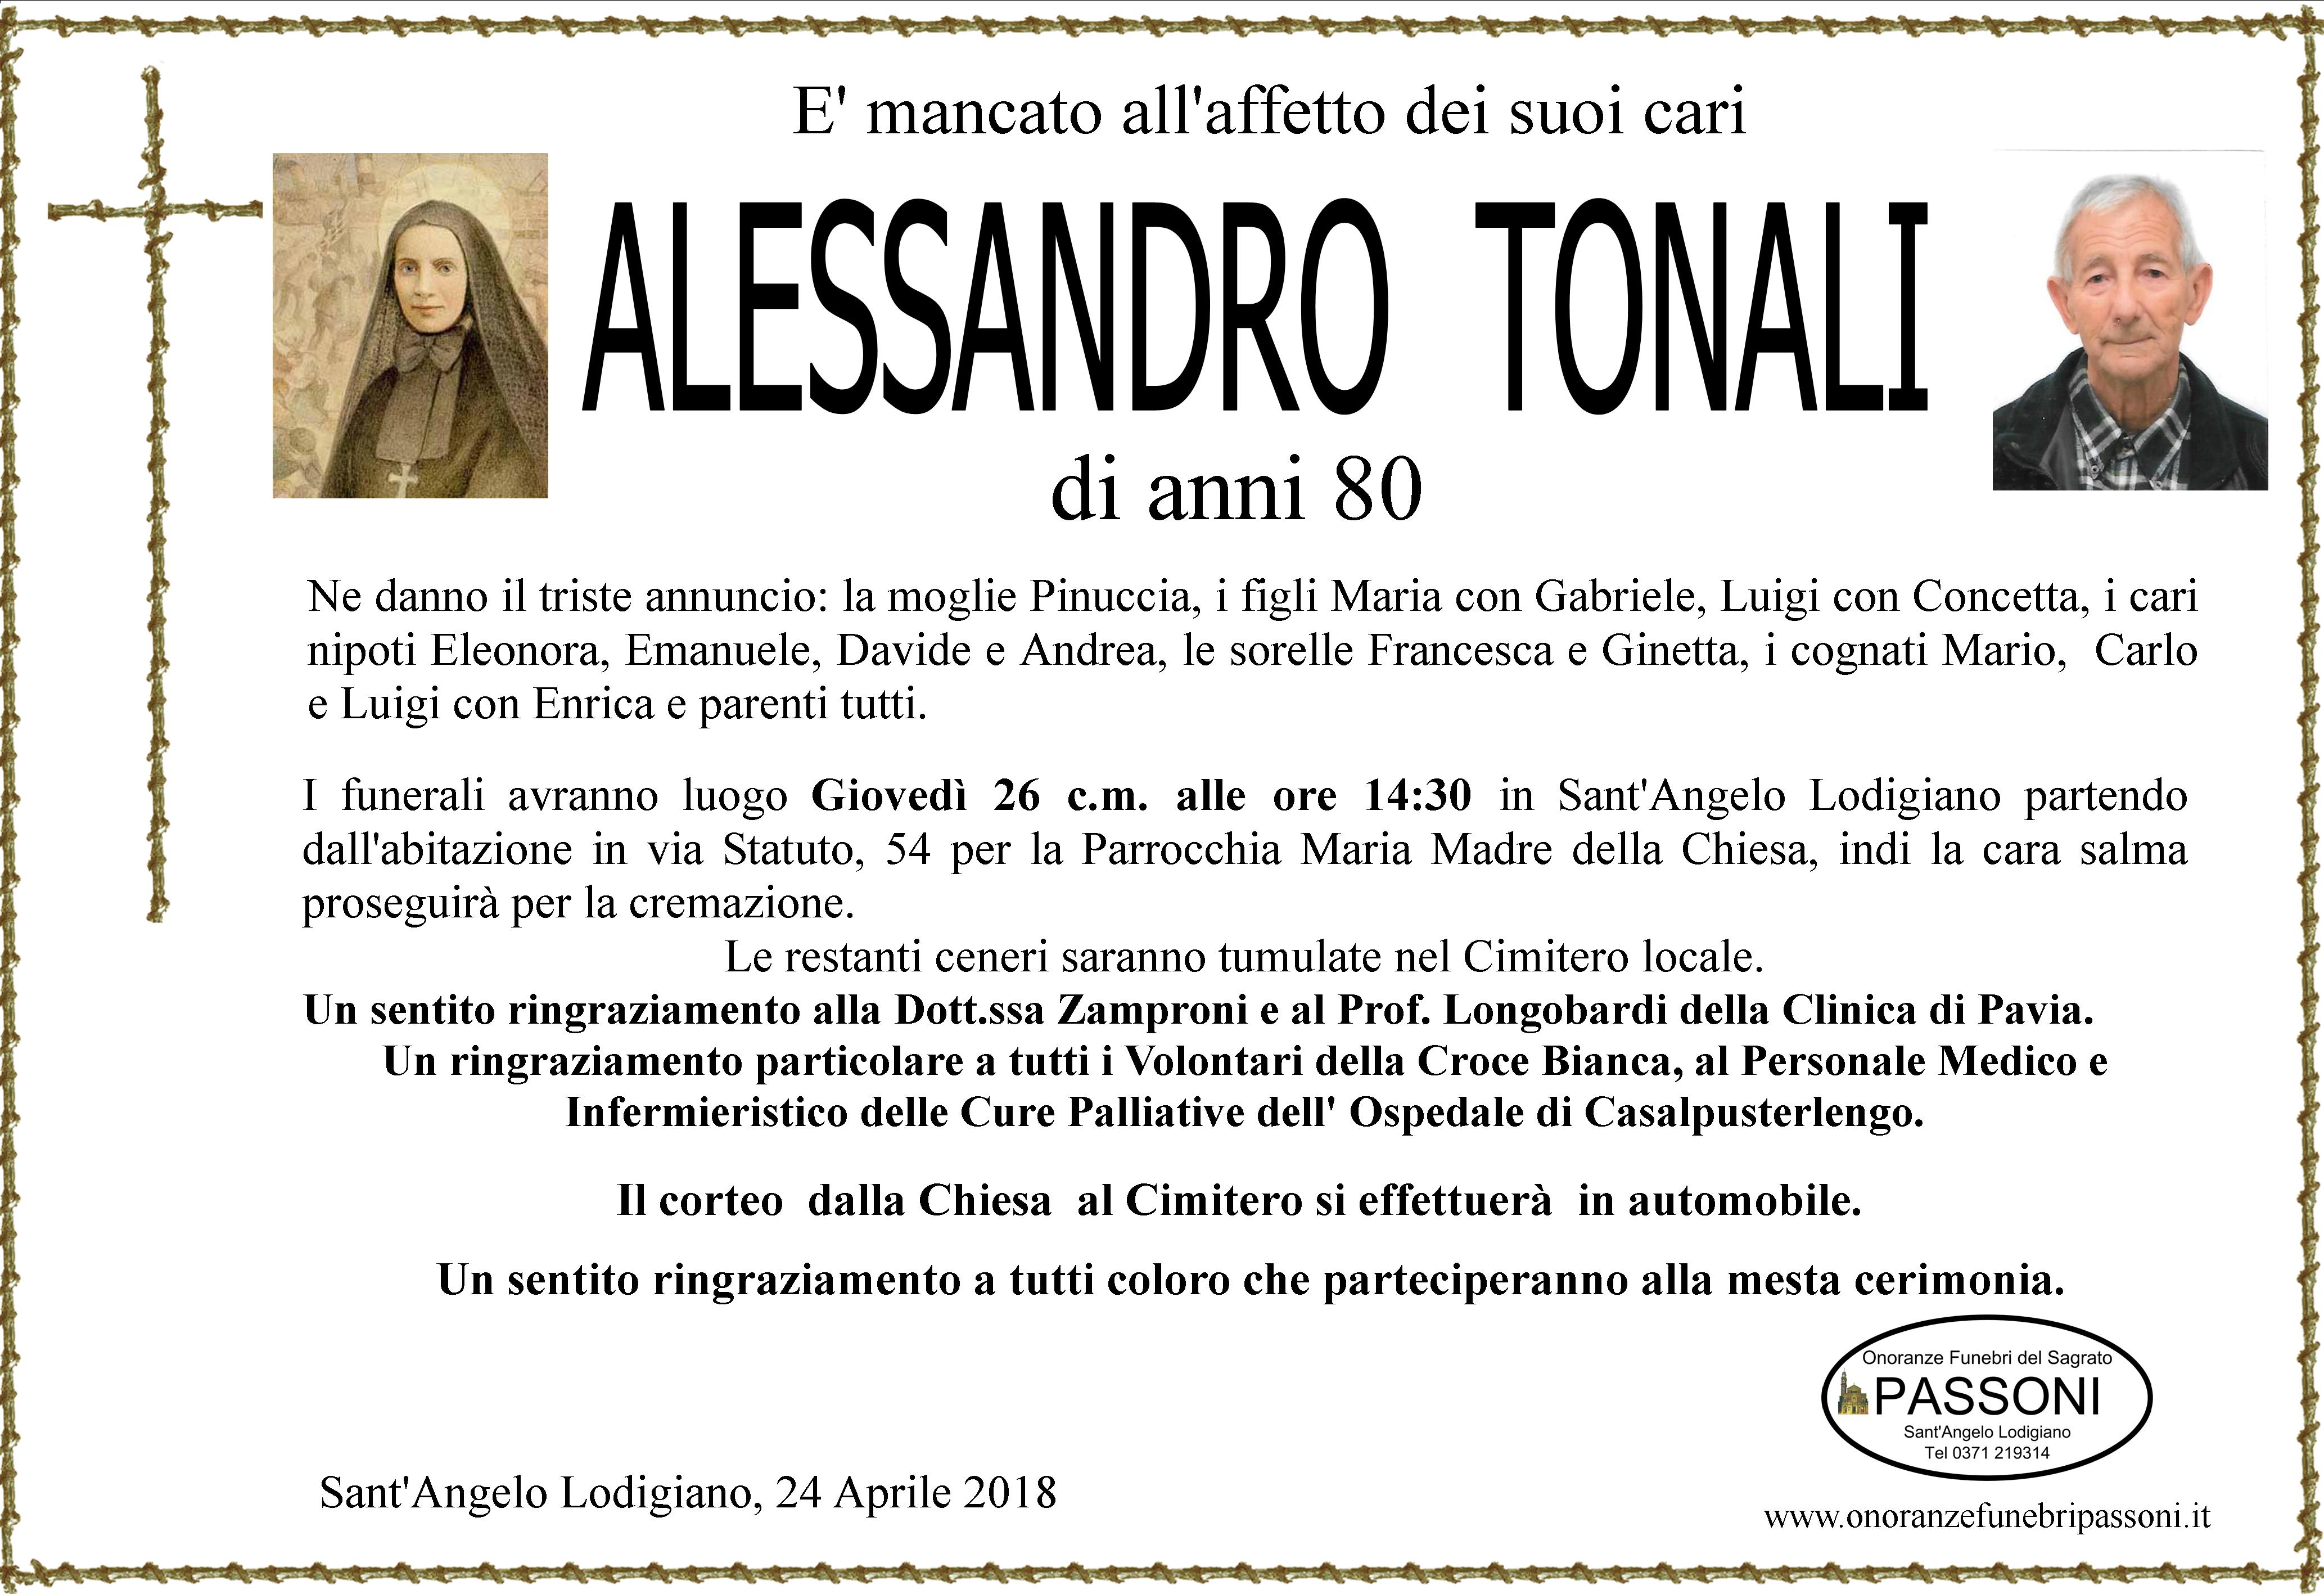 ALESSANDRO TONALI